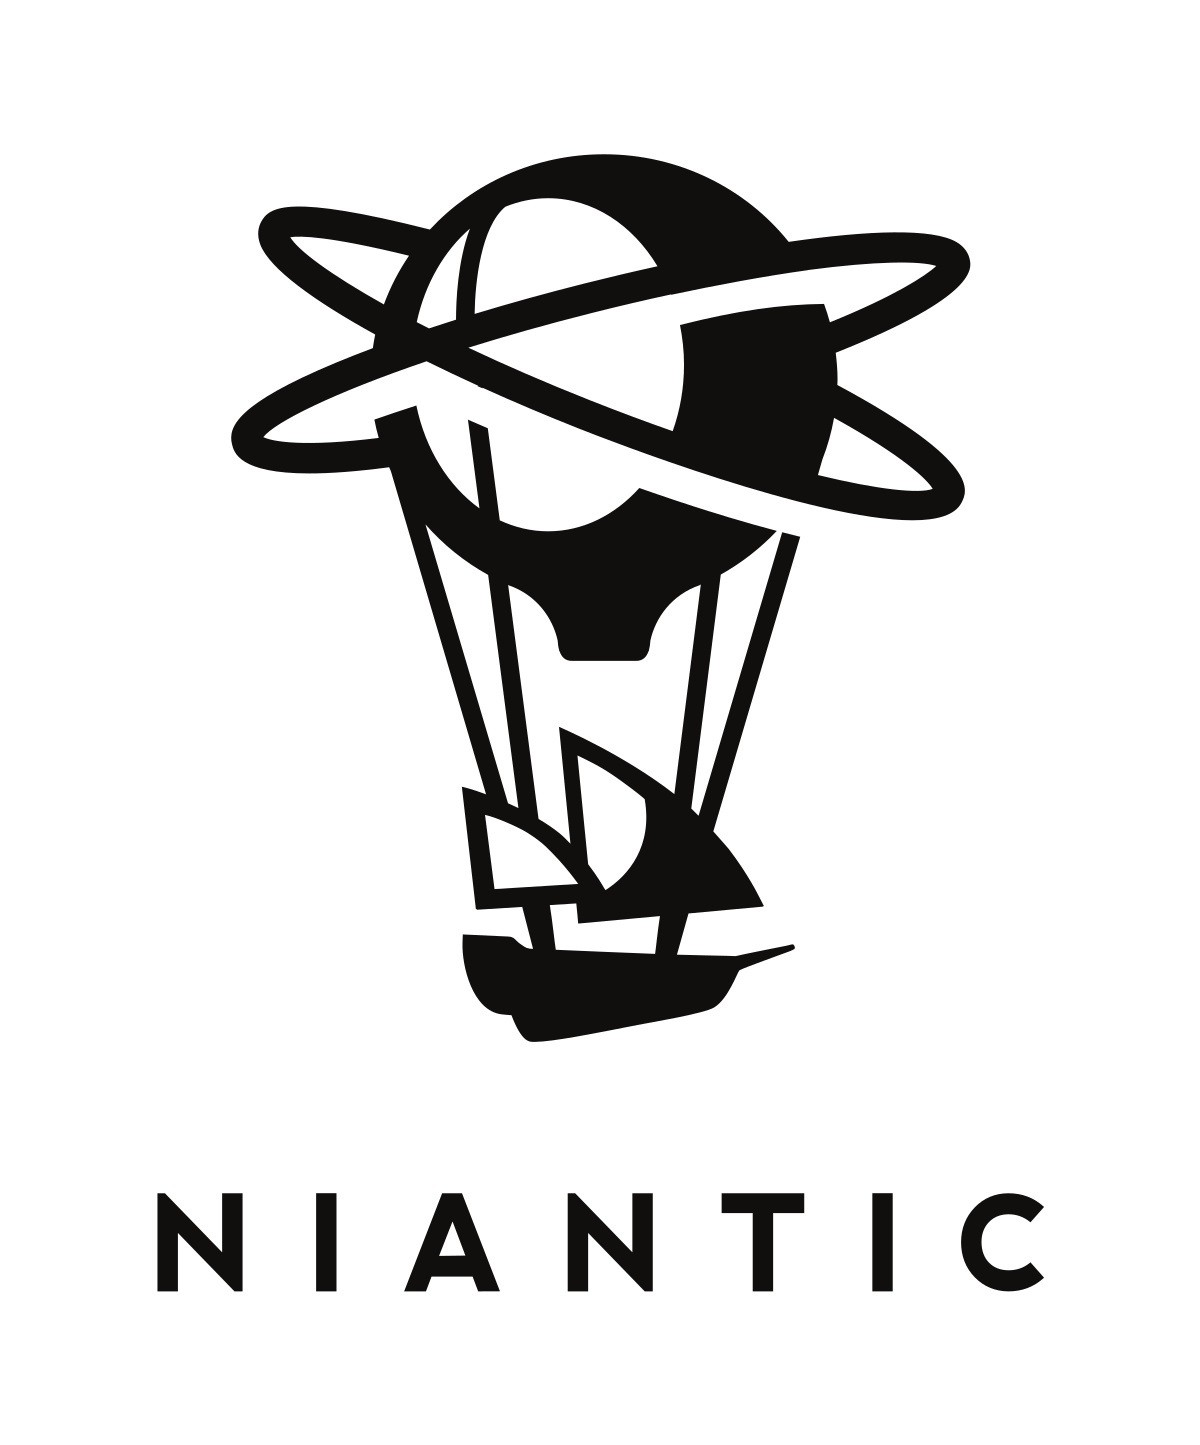 《Pokemon GO》開發商 Niantic 宣布旗下遊戲將於俄羅斯、白俄羅斯停止下載及服務